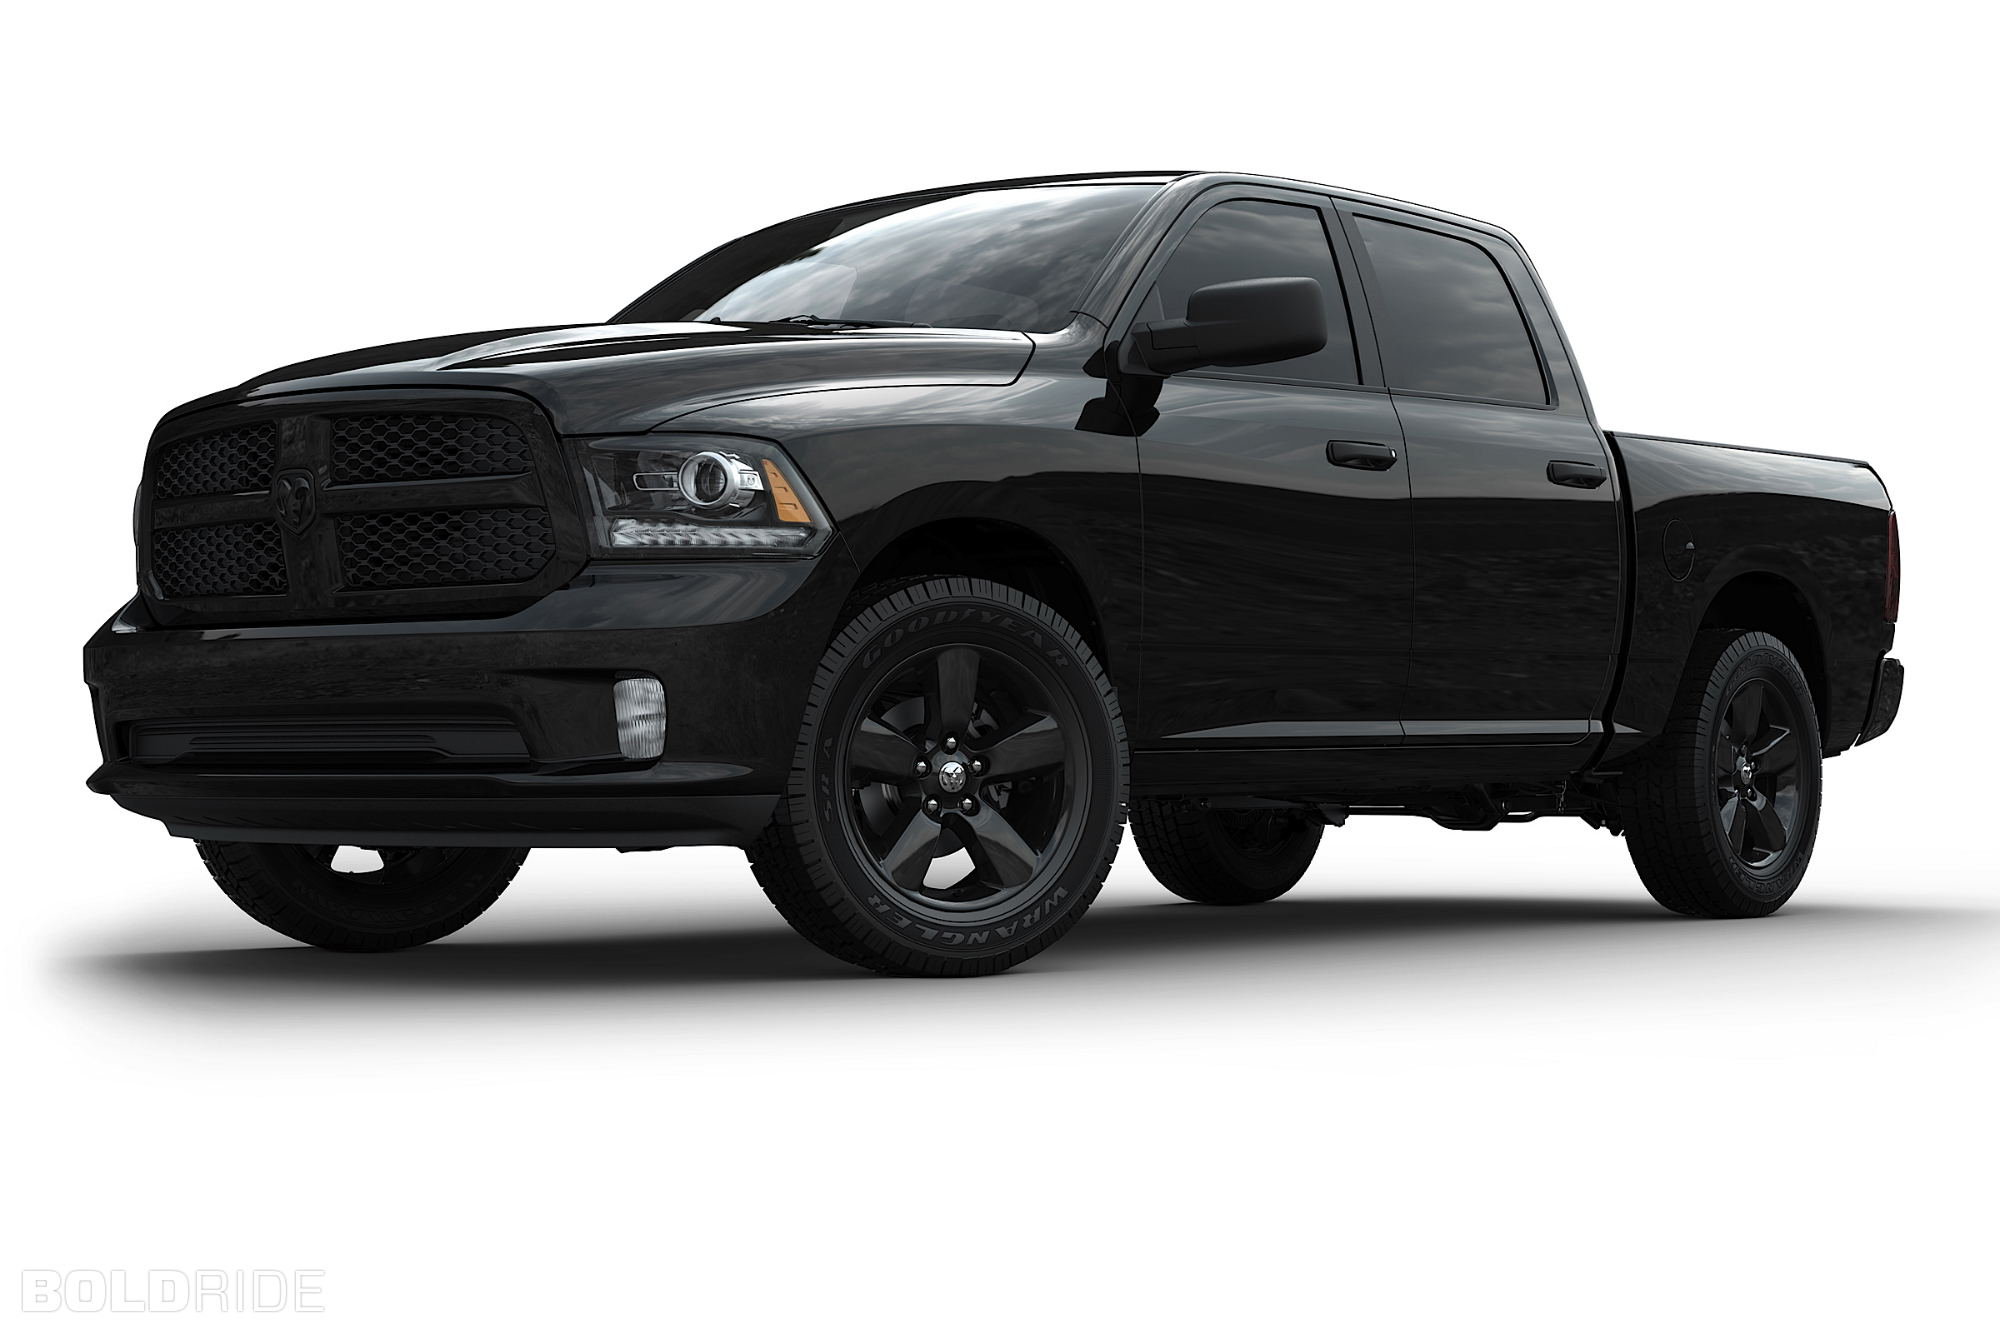 2013, Dodge, Ram, 1500, Black, Express, Pickup, Supertruck, Truck, Muscle, 4x4 Wallpaper